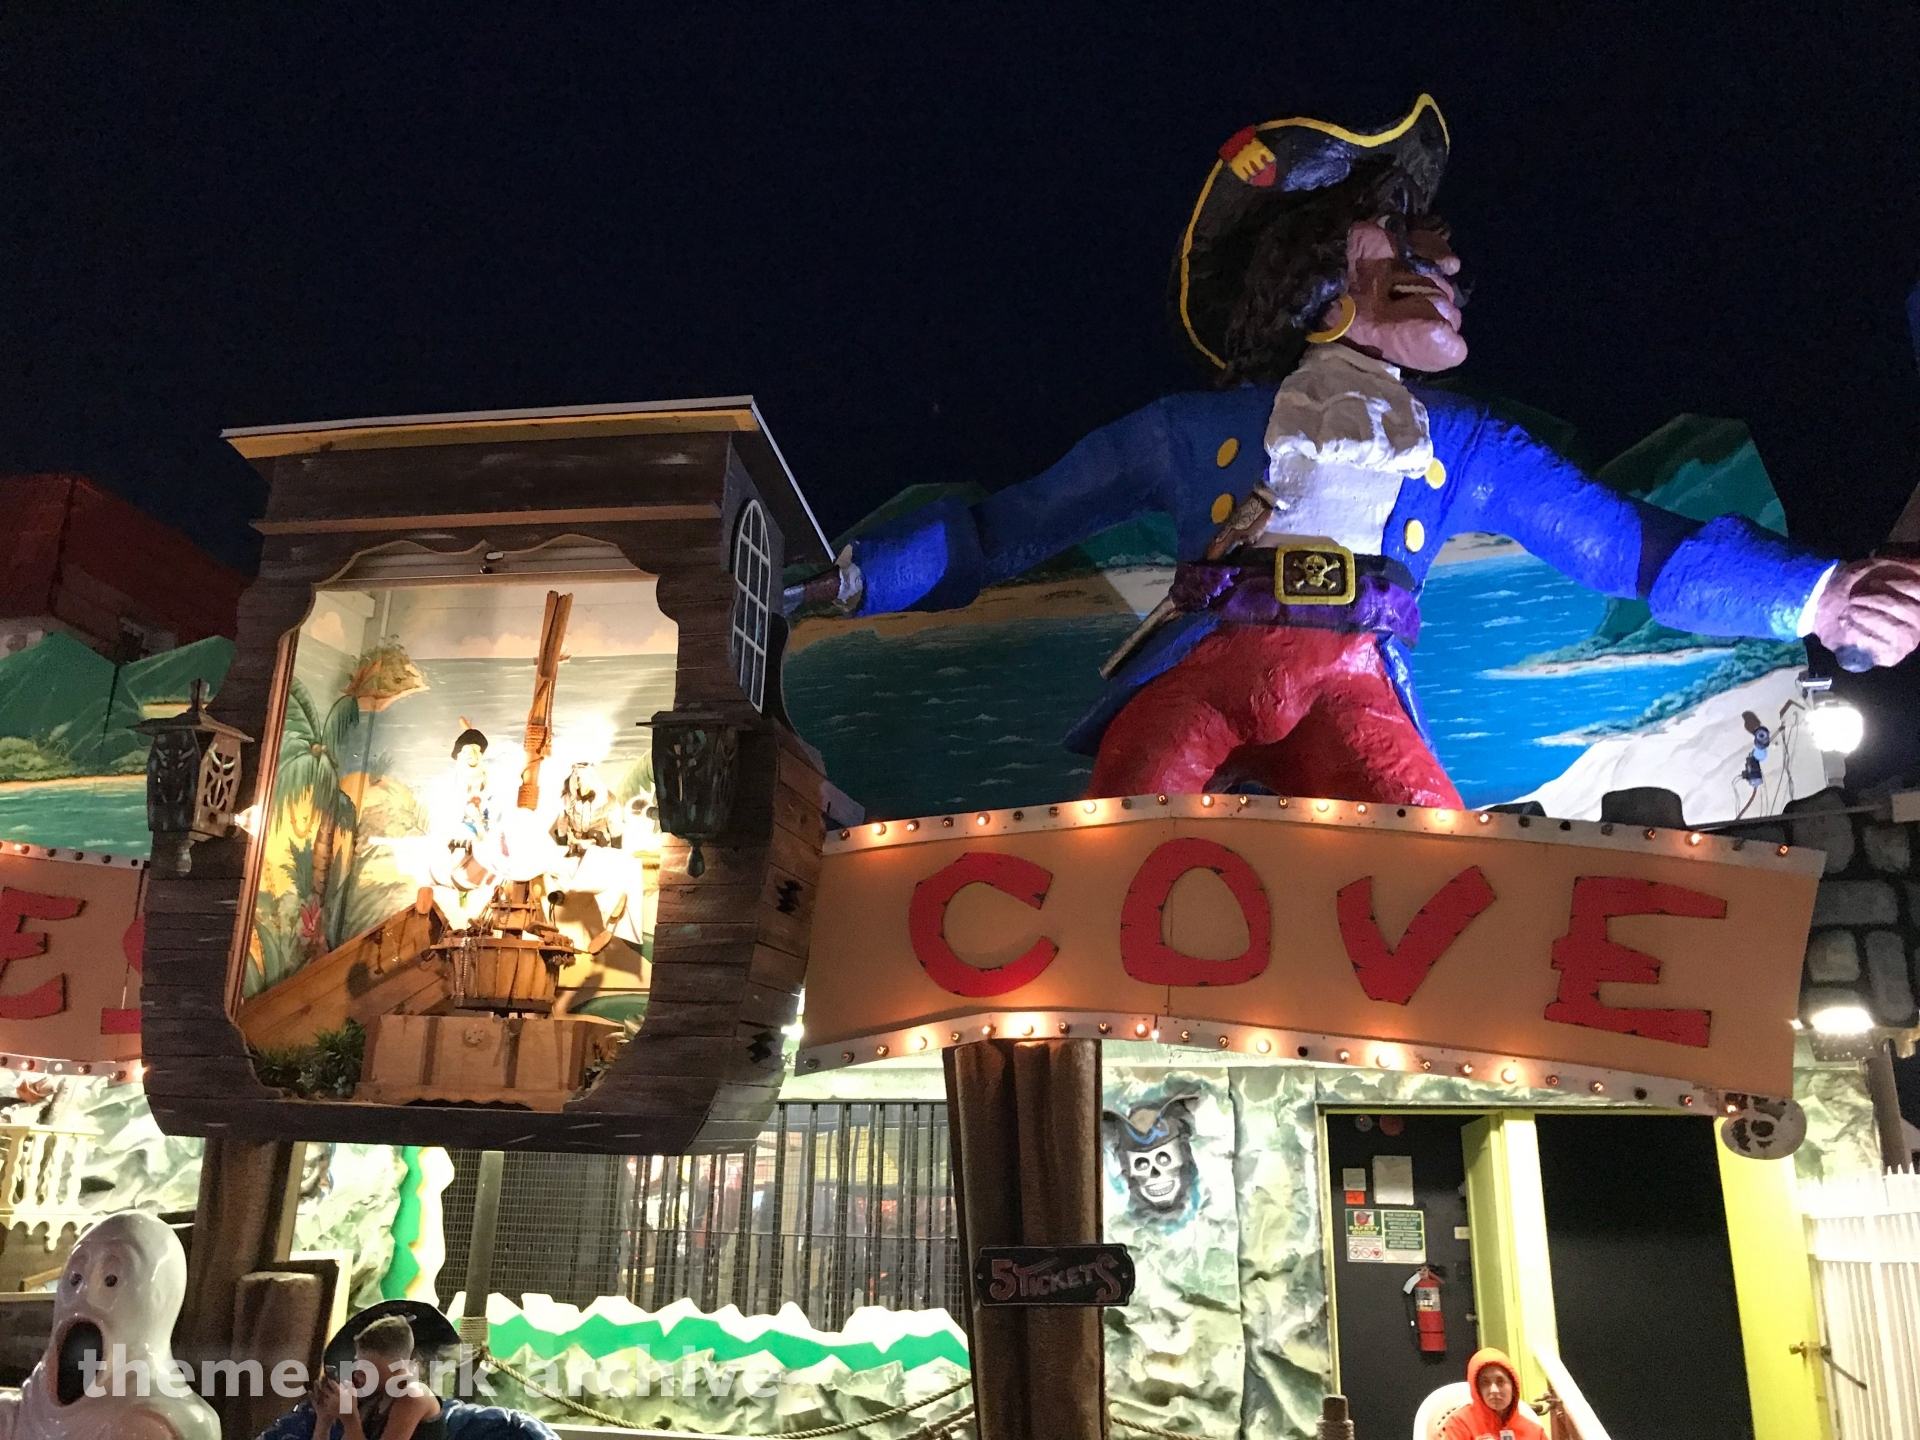 Pirate's Cove at Trimper's Rides